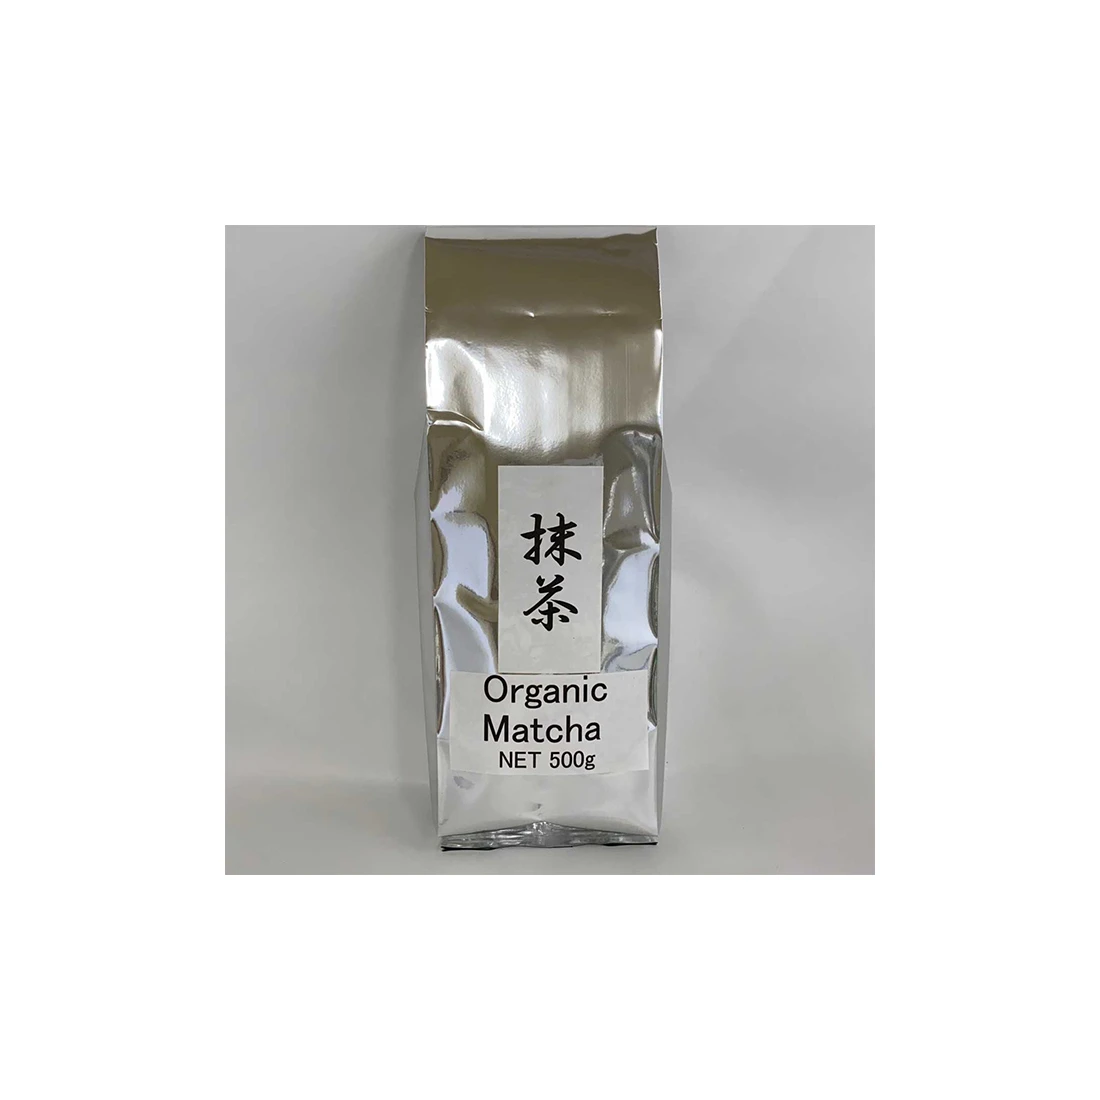 Natural organic green tea powder extract matcha made in Japan